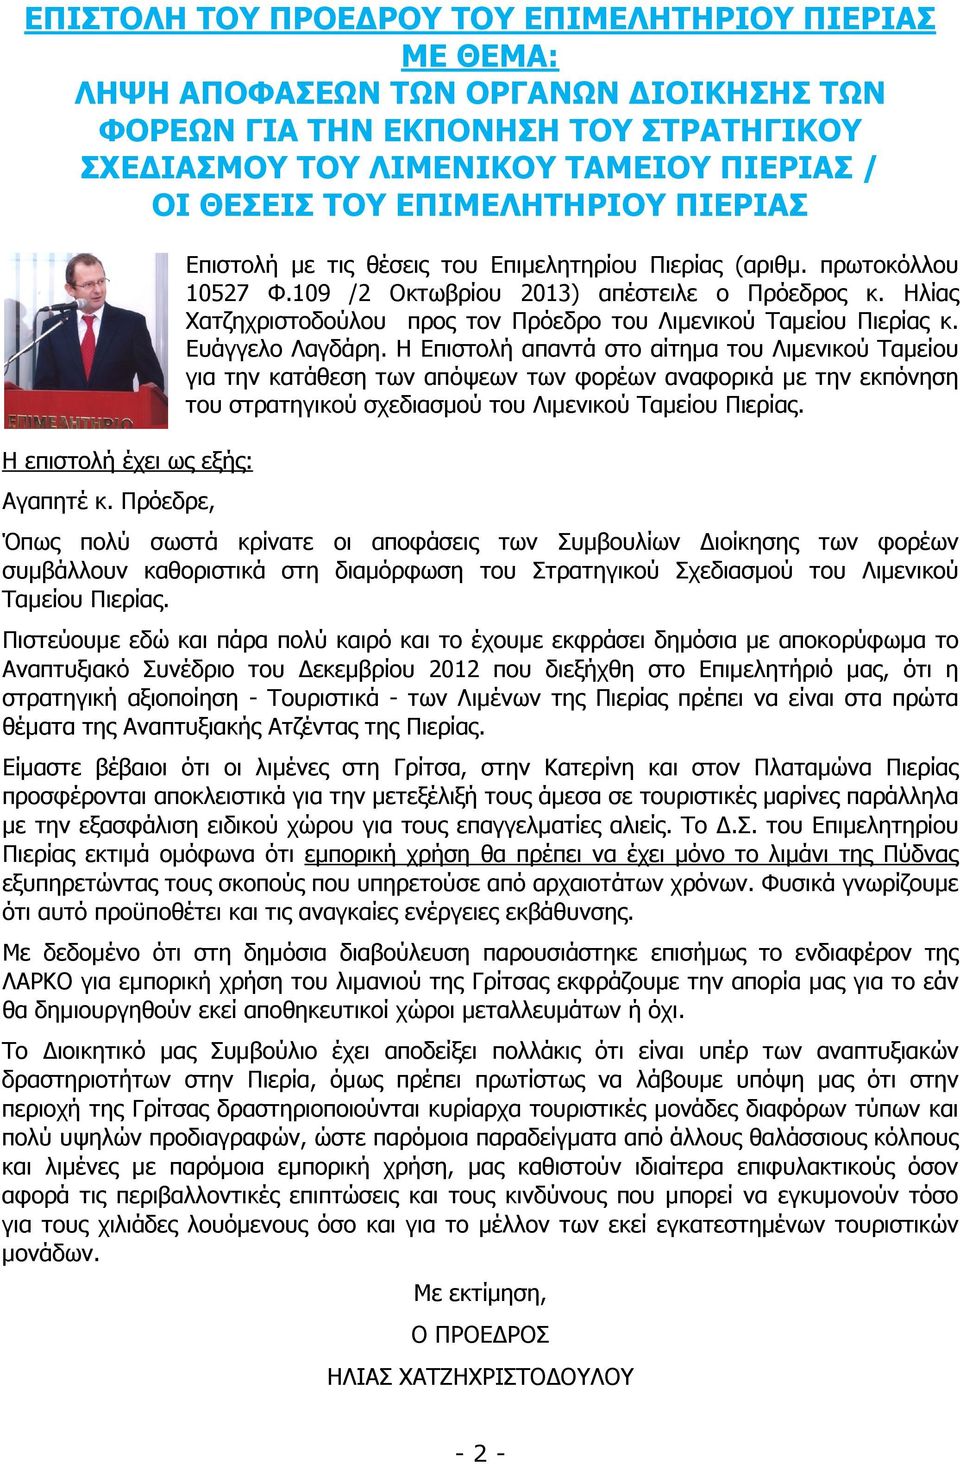 Ηλίας Χατζηχριστοδούλου προς τον Πρόεδρο του Λιµενικού Ταµείου Πιερίας κ. Ευάγγελο Λαγδάρη.